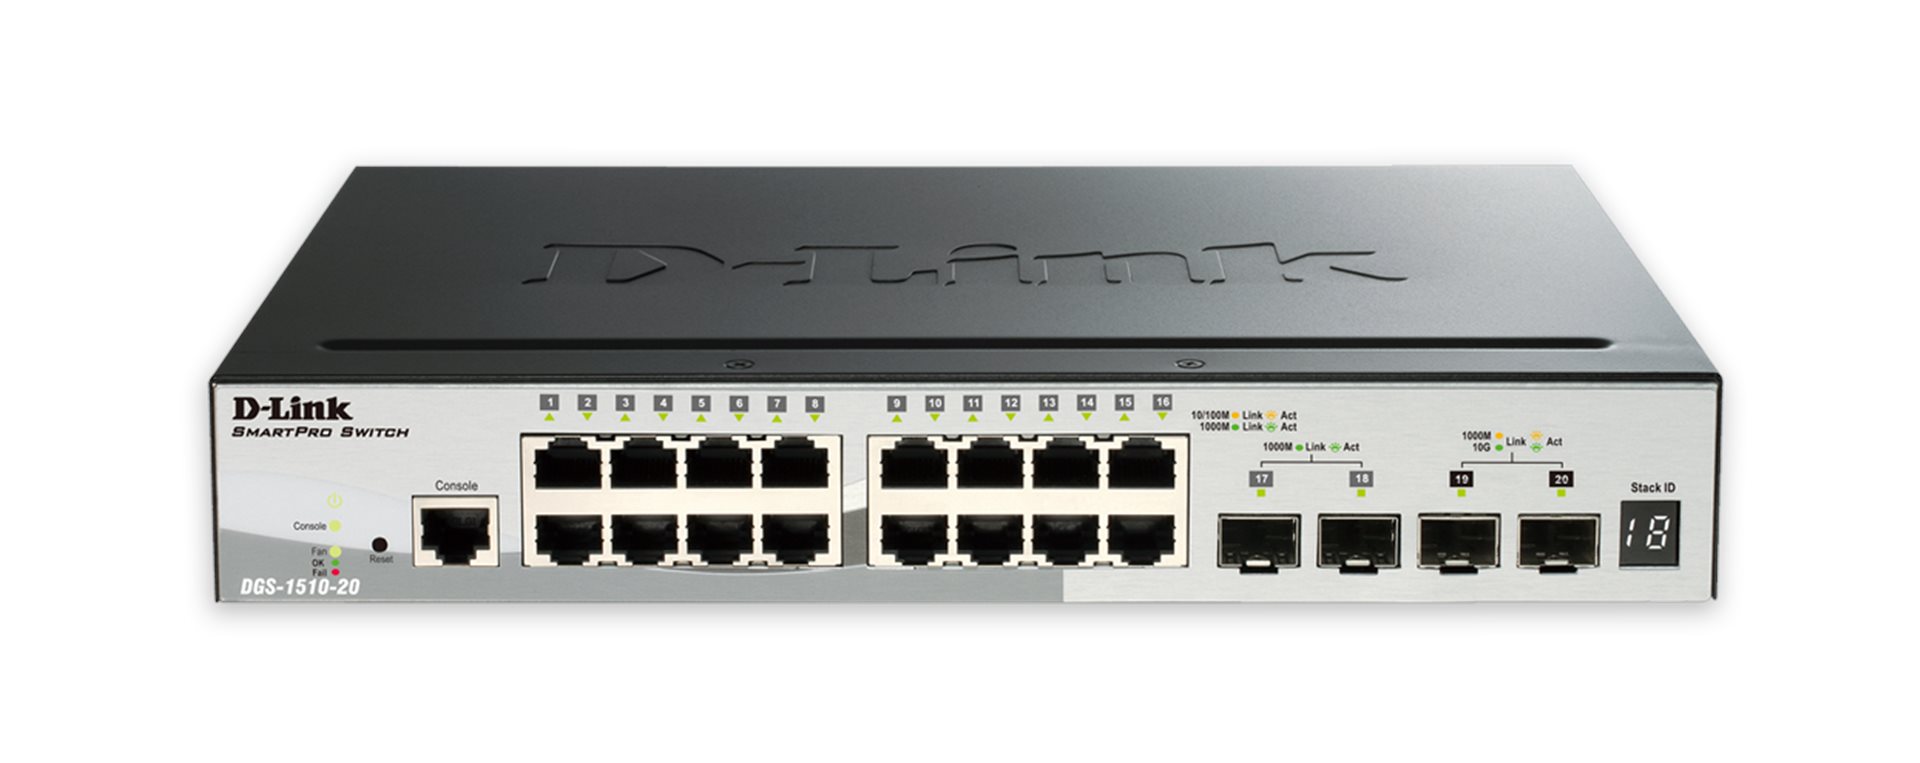 D-Link DGS-1510-20 D-Link DGS-1510-20 20-Port Gigabit Stackable SmartPro Switch, 16x gigabit RJ45, 2x 10G SFP+ port, 2x SFP port